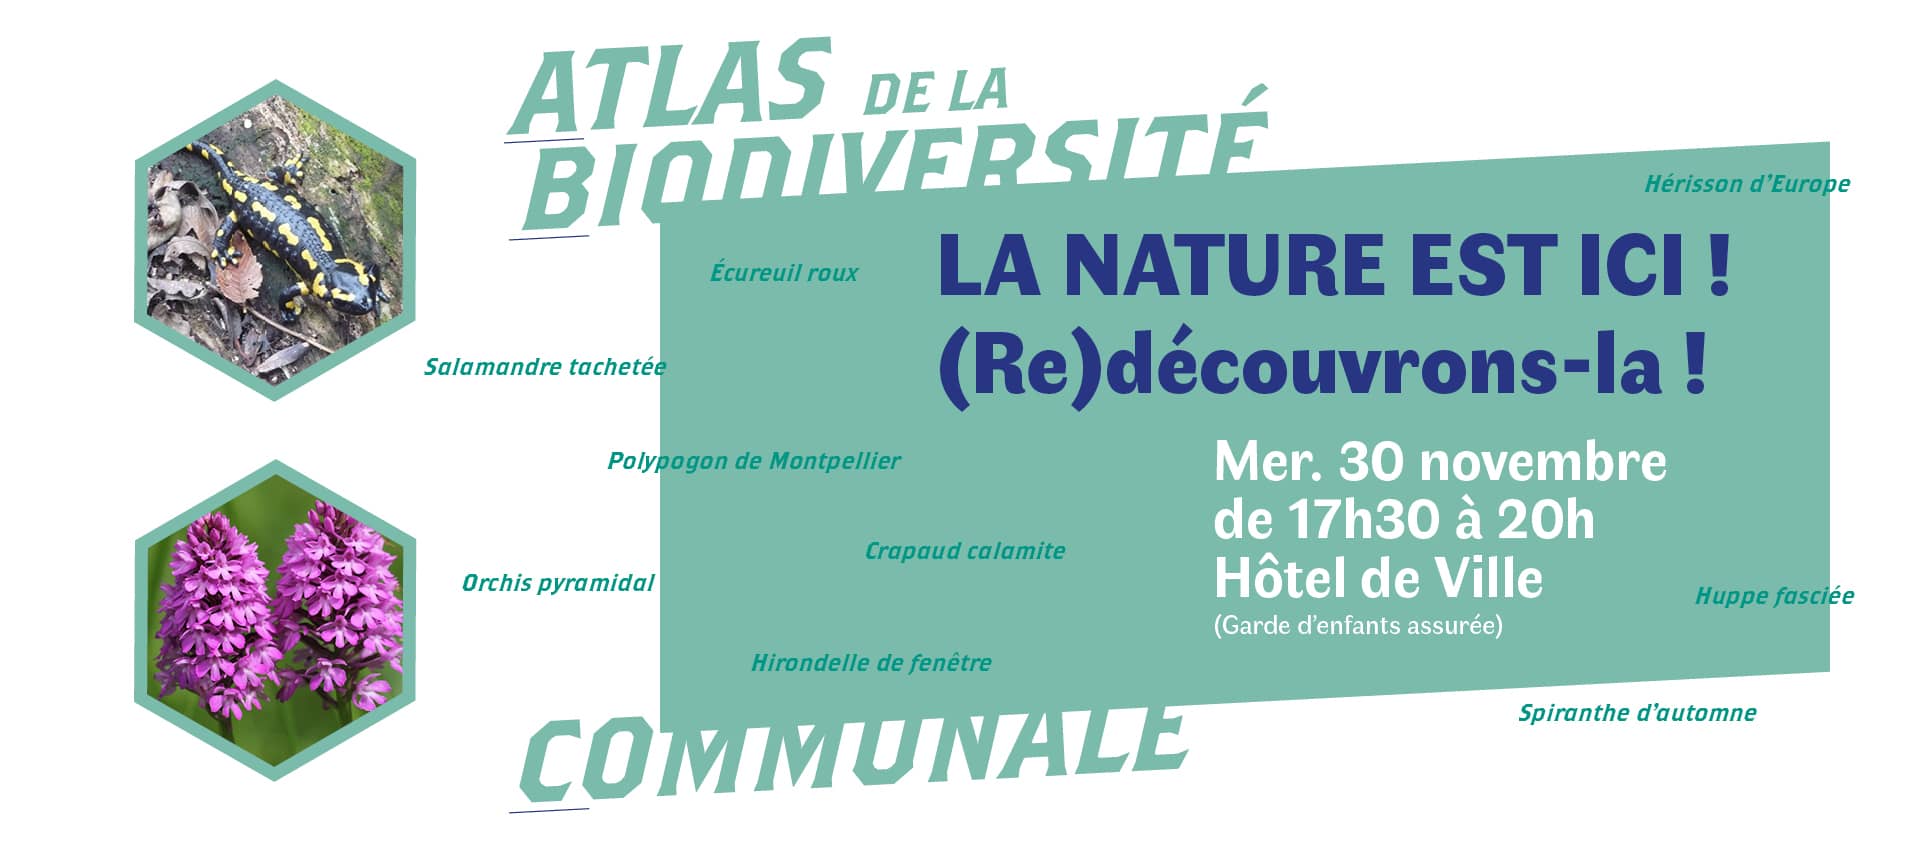 Slider pour la réunion publique sur l'Atlas de la Biodiversité Communale avec la dat, l'heure et le lieu de la réunion